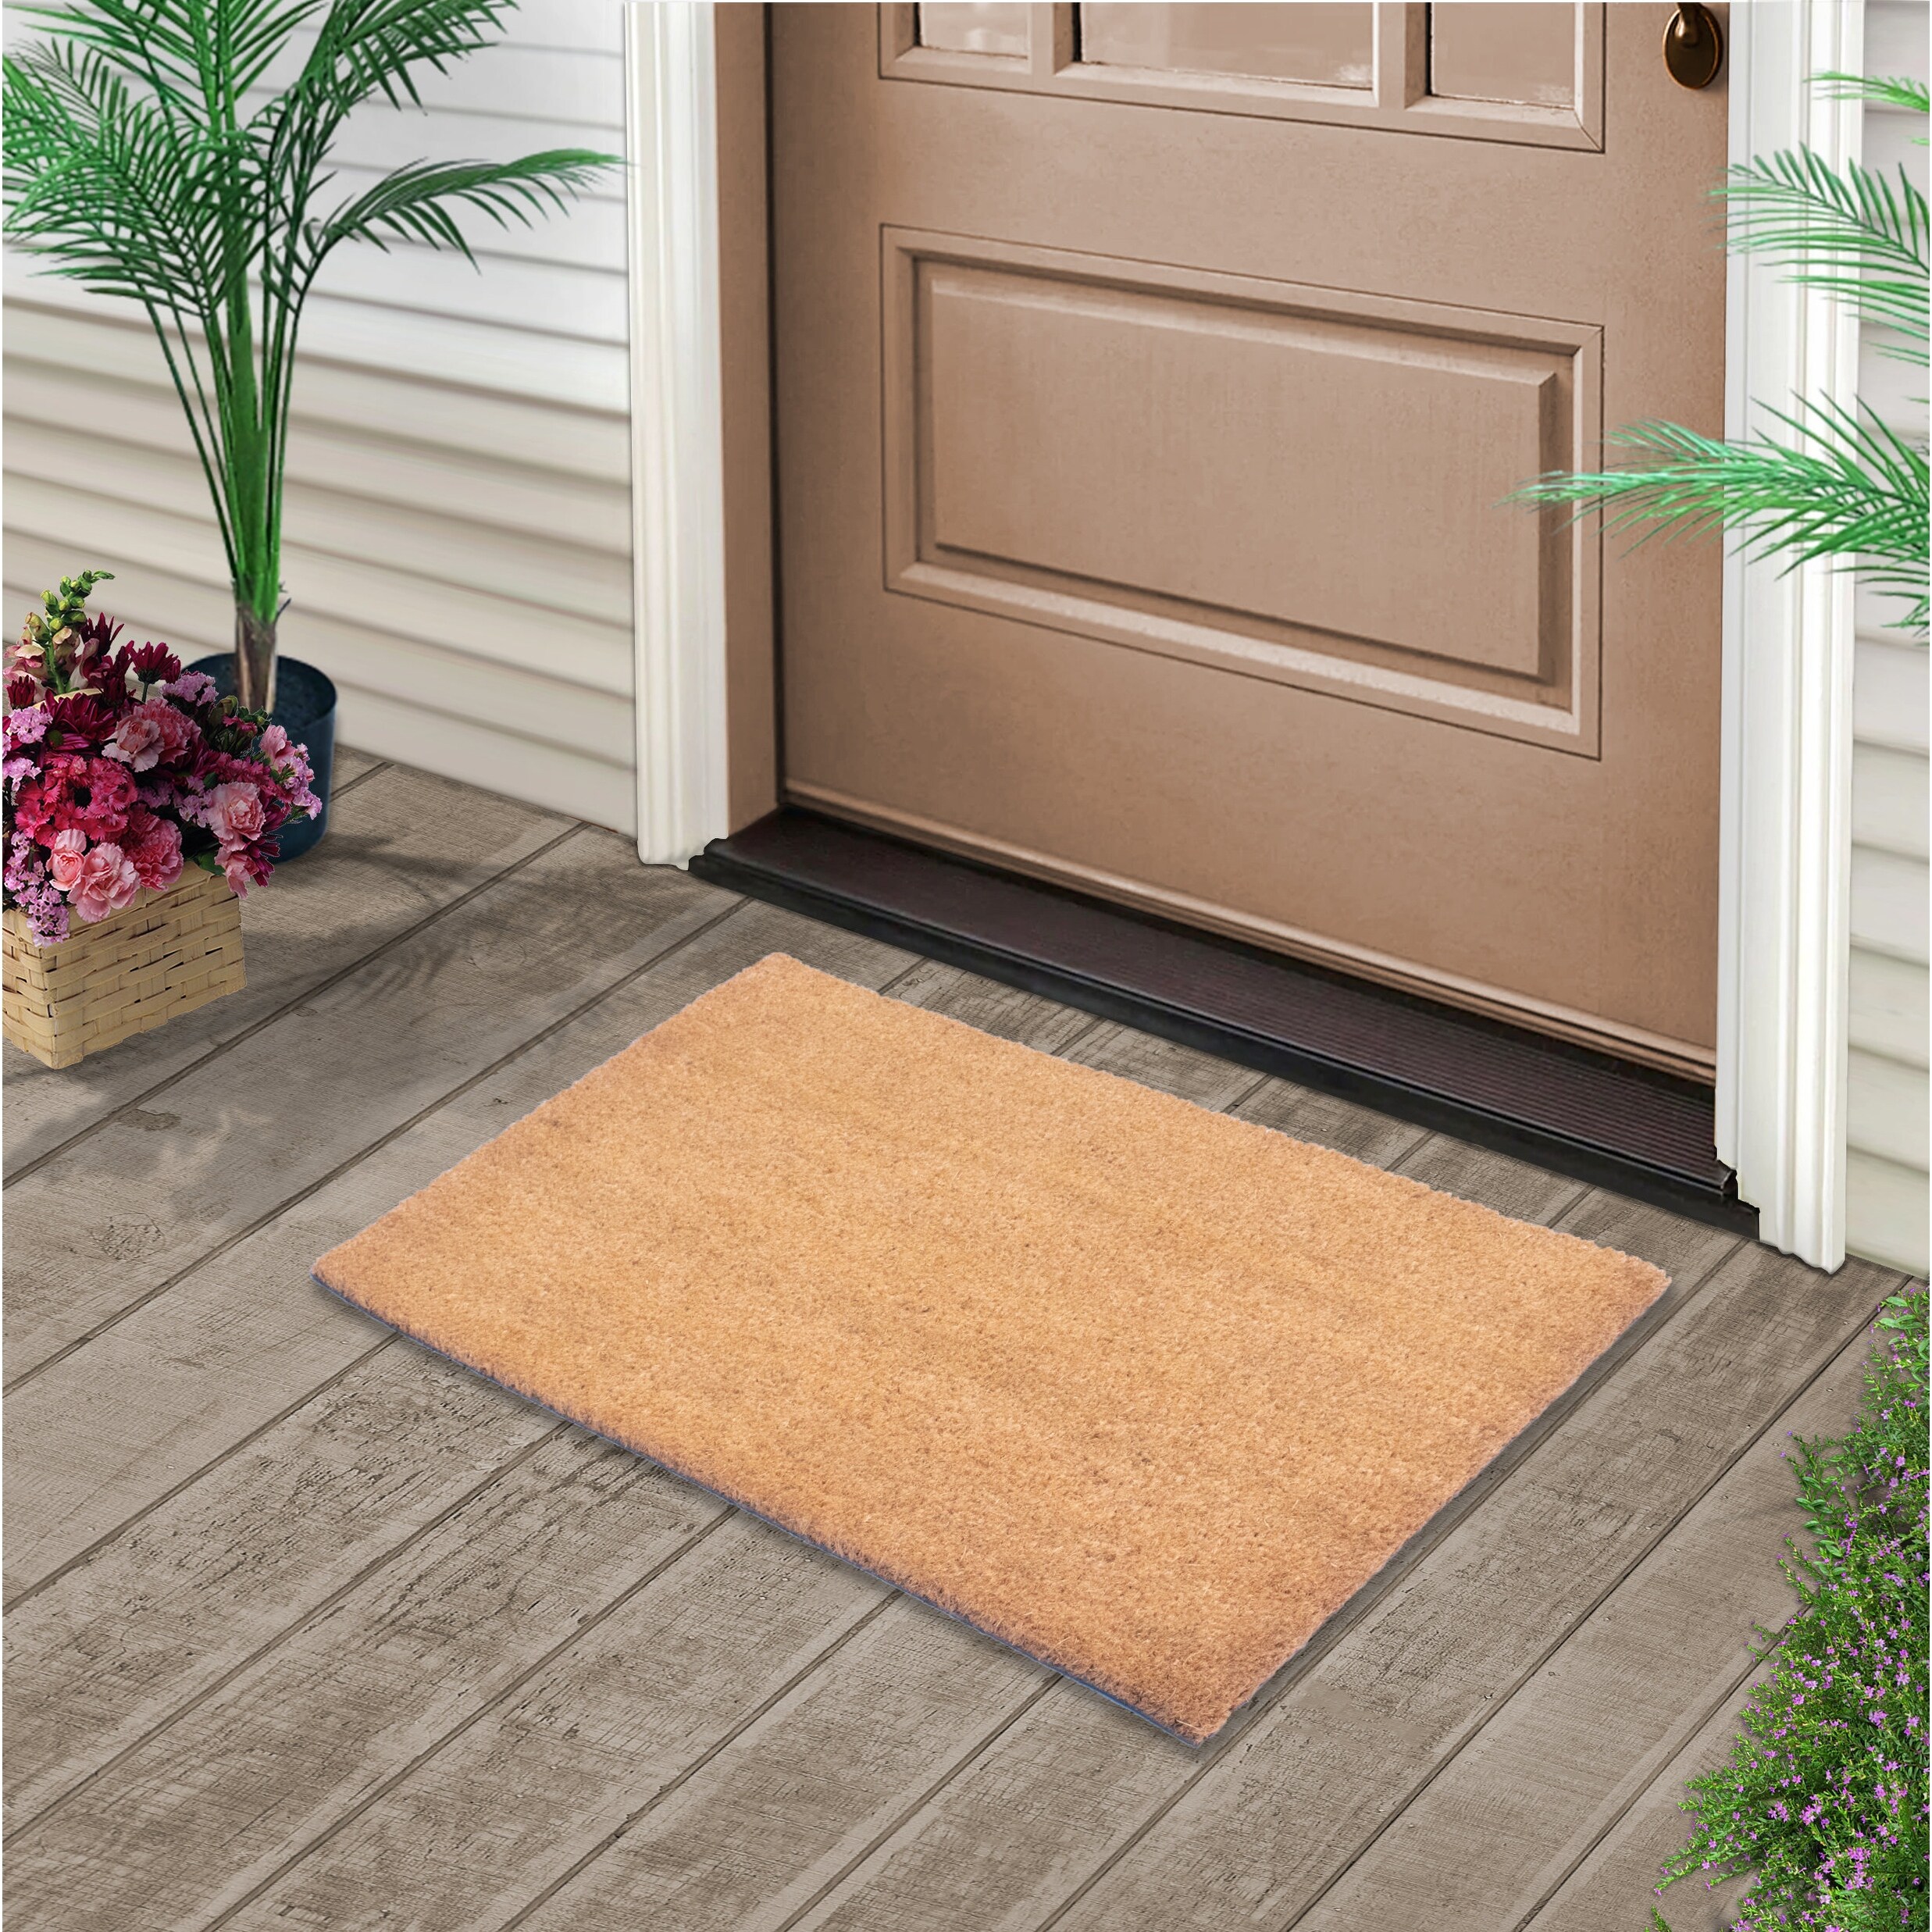 Blank Doormats, Doormat Plain, Coir Door Mat, Simple Doormat